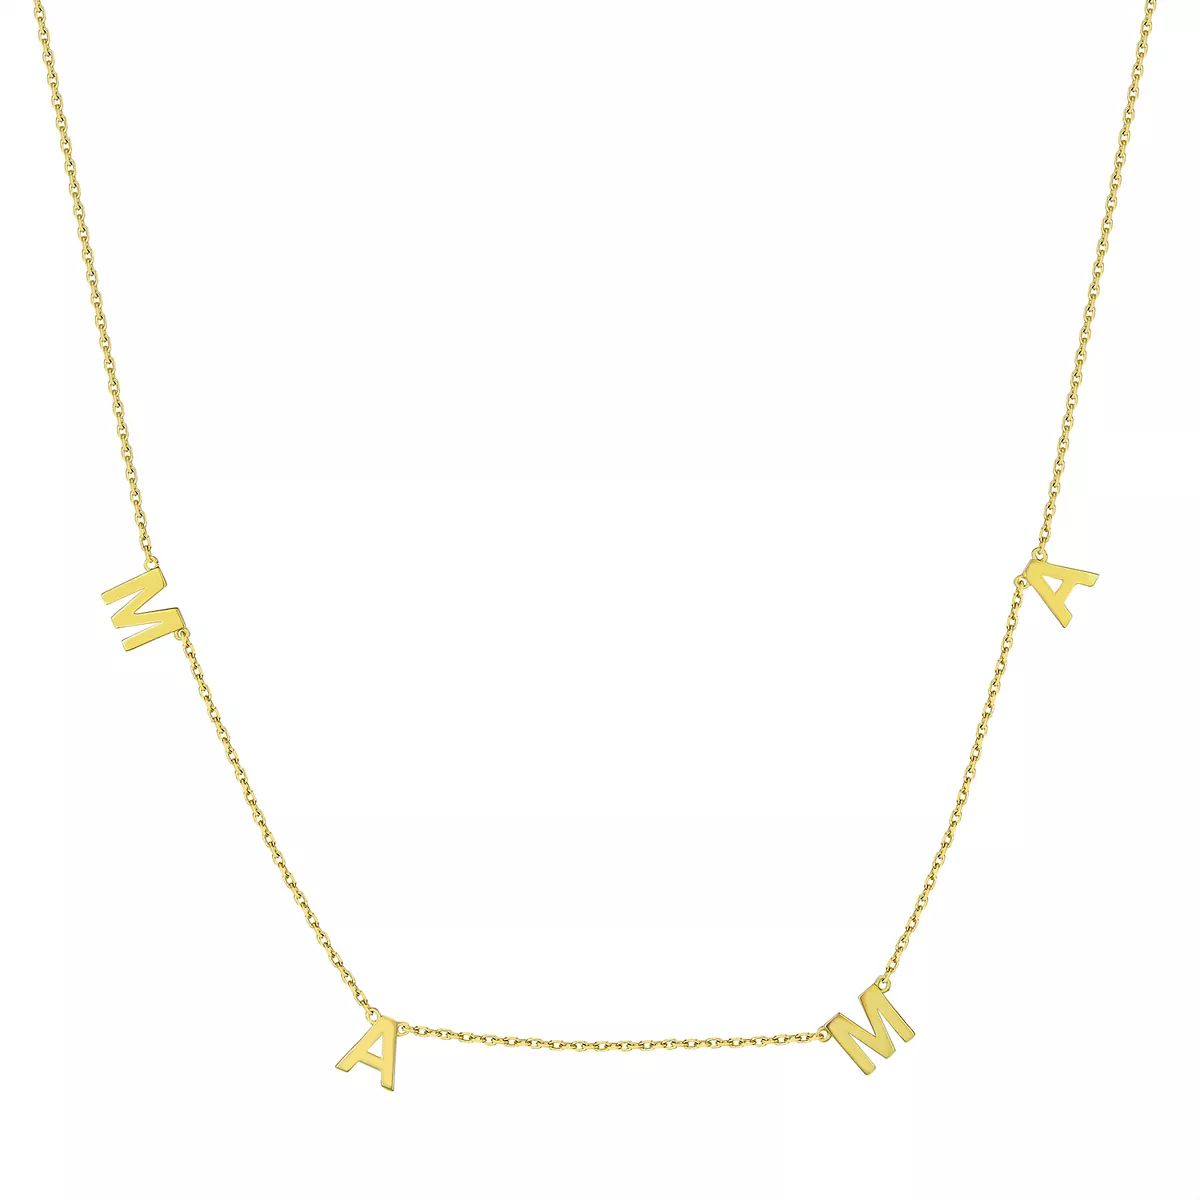 Taylor Grace 10k Gold "MAMA" Necklace | Kohl's